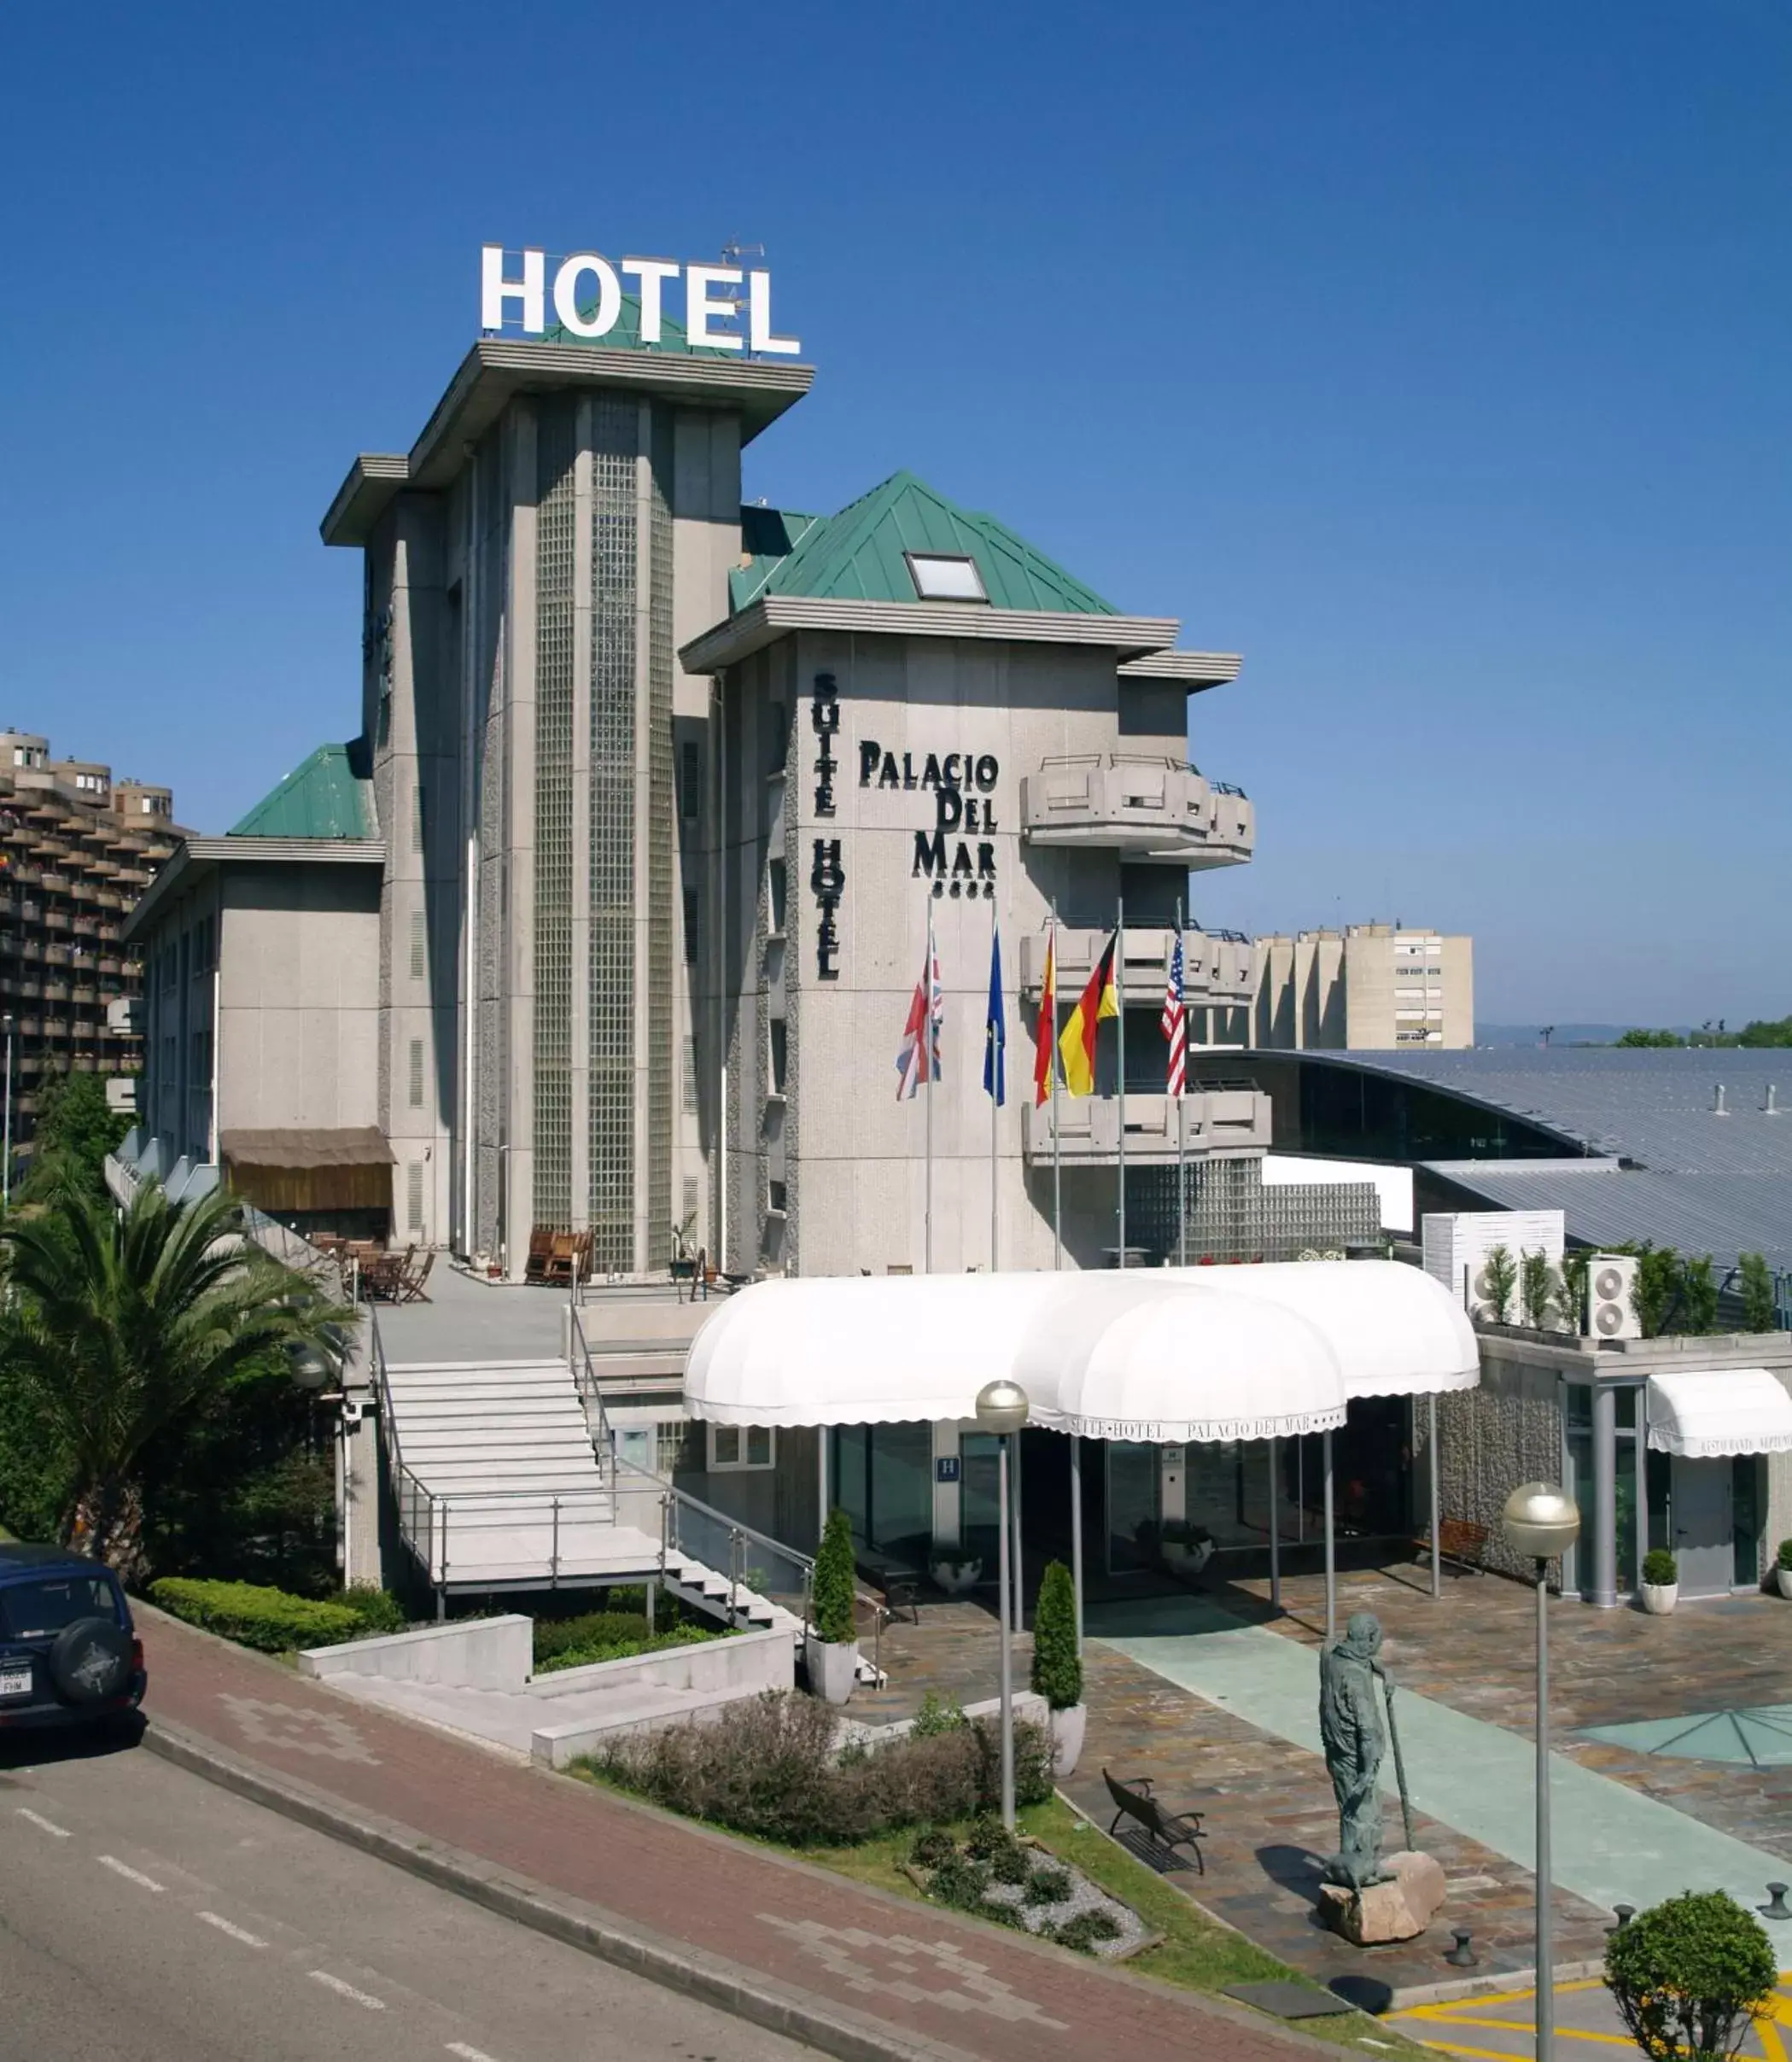 Facade/entrance in Hotel Palacio del Mar